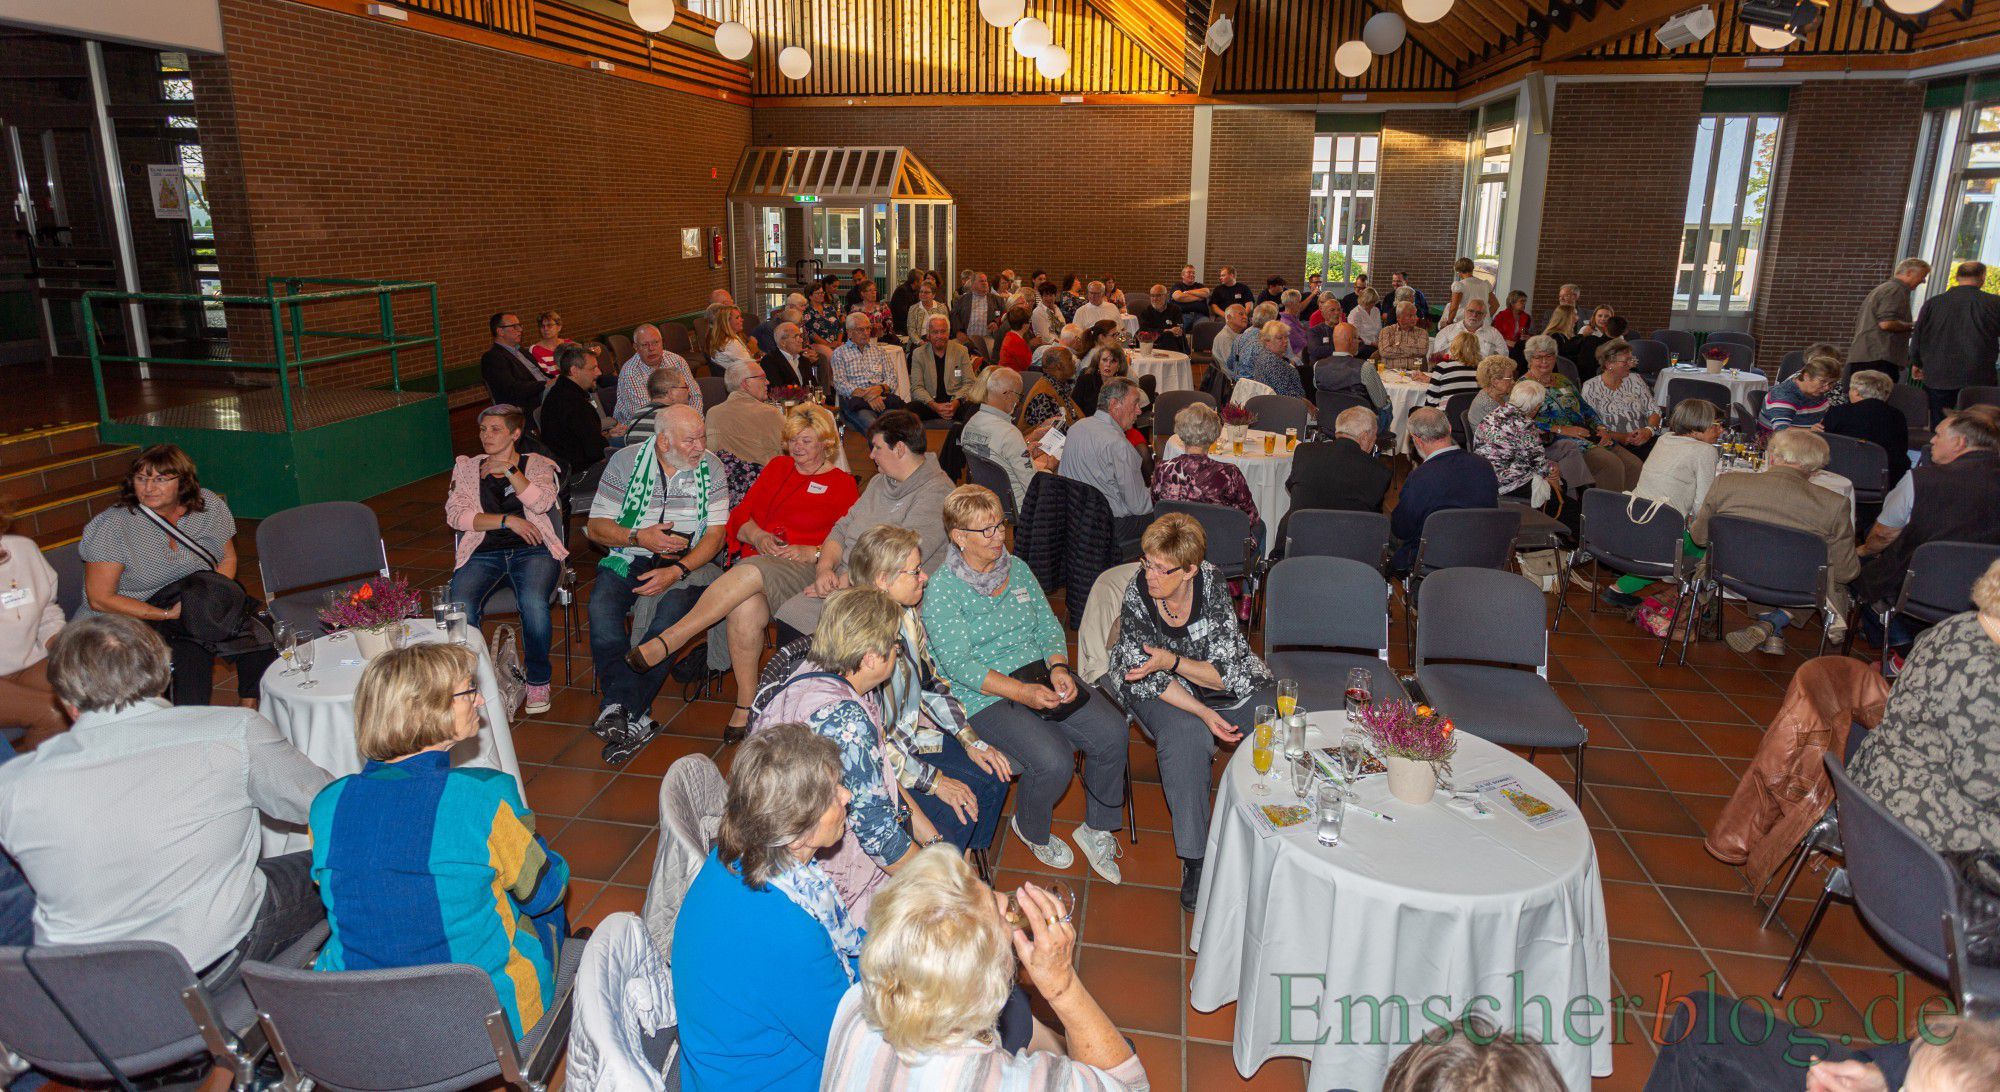 Etwa 170 ehrenamtlich Tätige waren zum zweiten Ehrenamtstag der Gemeinde ins Forum gekommen. (Foto: P. Gräber - Emscherblog.e)